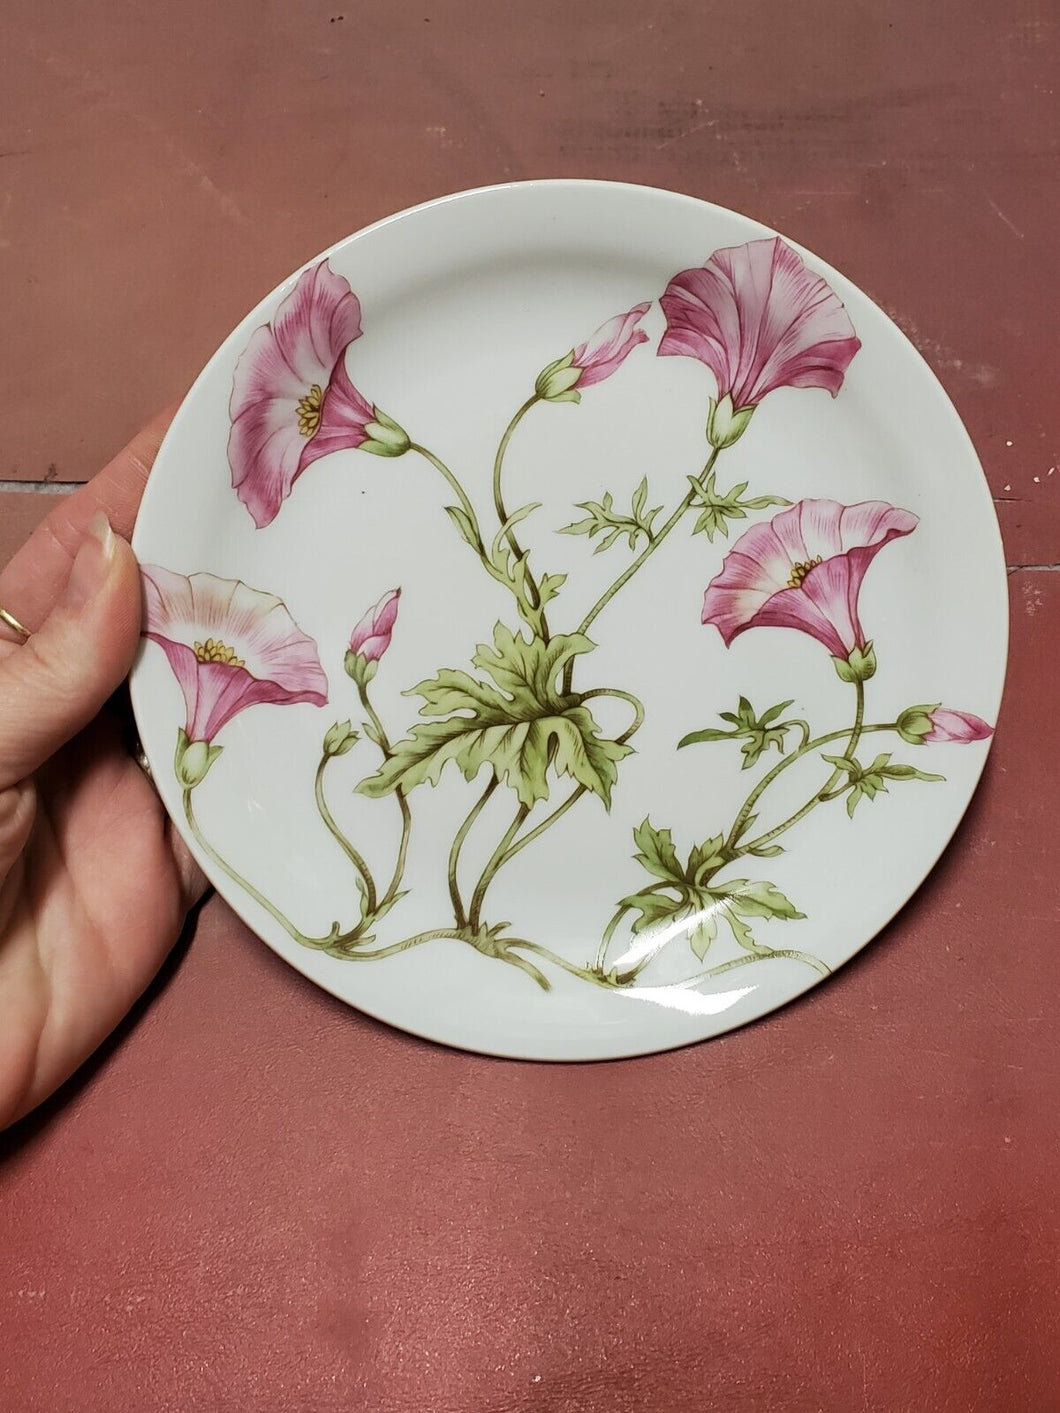 Vintage Pillivuyt Porcelain Pink Morning Glory Floral Dessert Plate